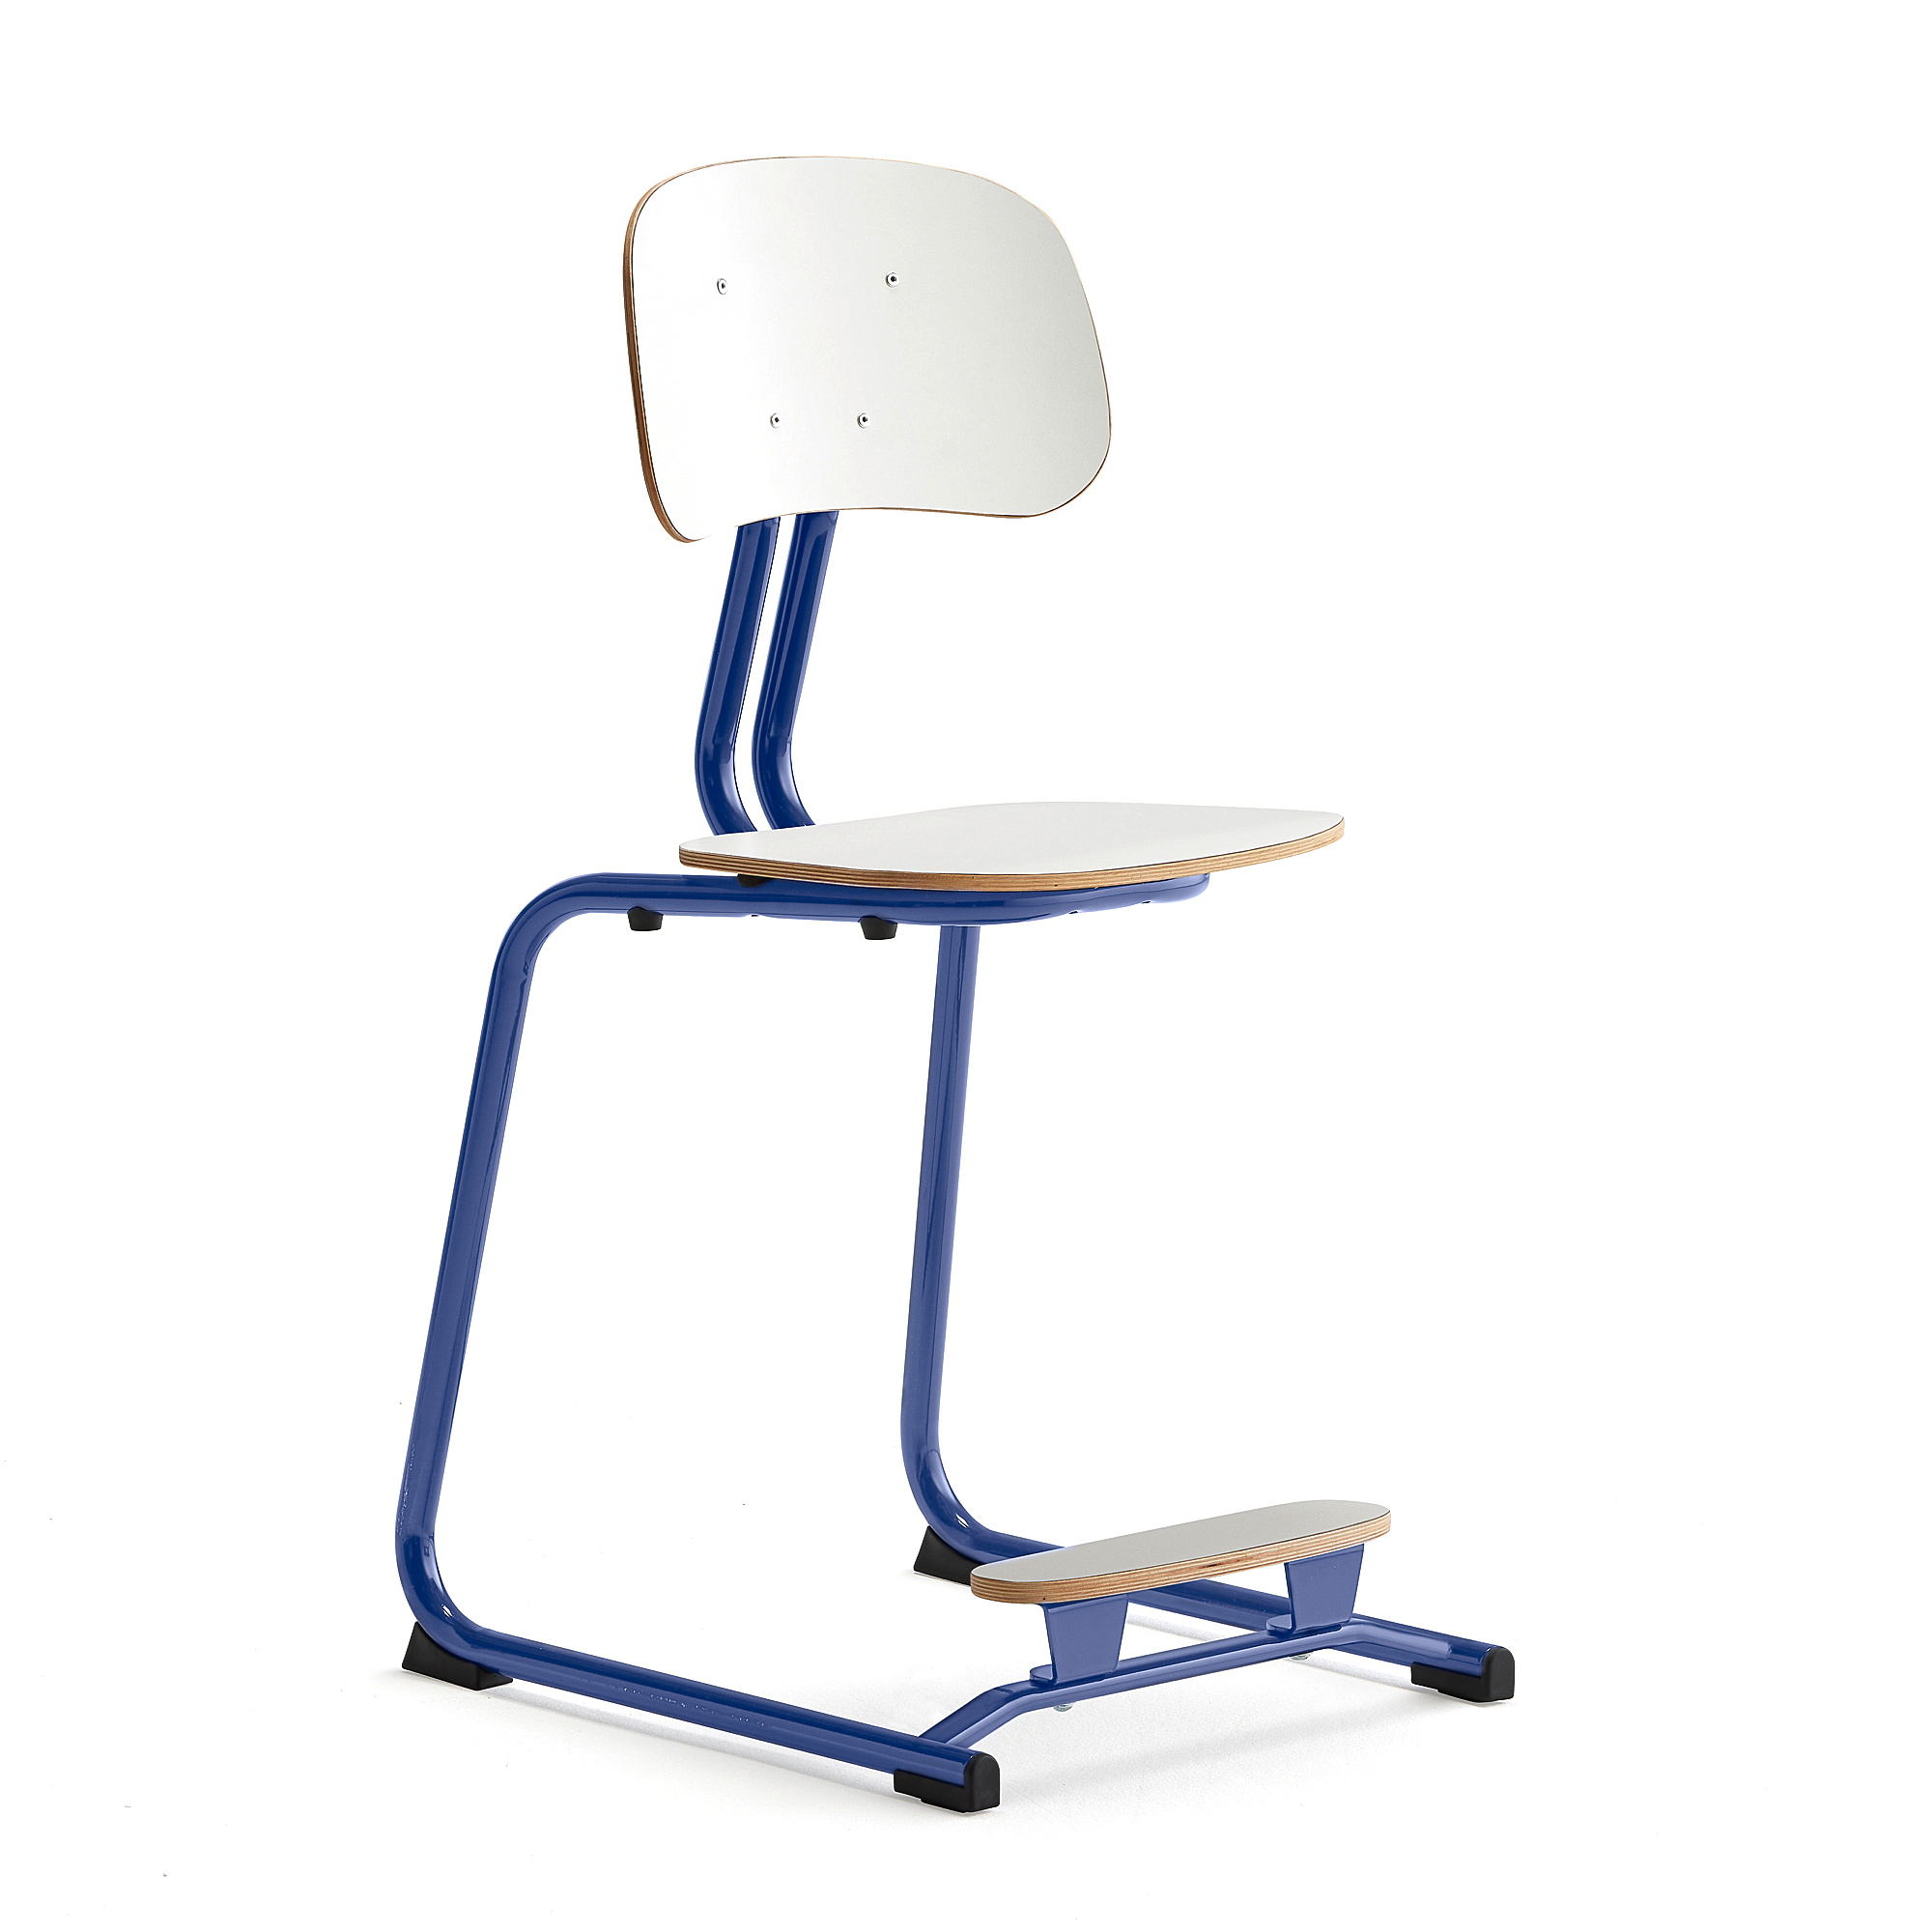 Školní židle YNGVE, ližinová podnož, výška 500 mm, tmavě modrá/bílá